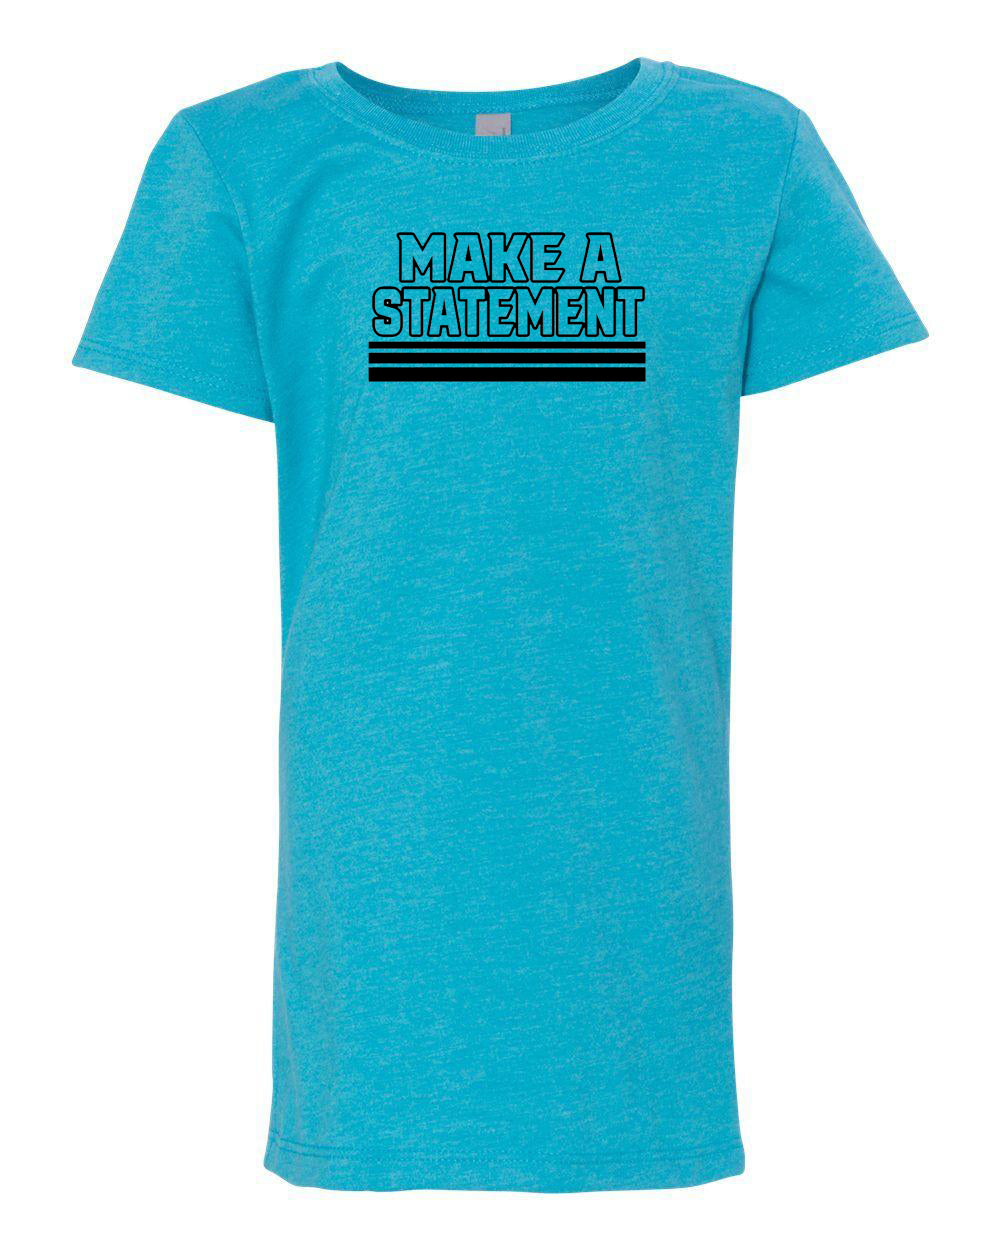 Make A Statement Girls T-Shirt Ocean Blue